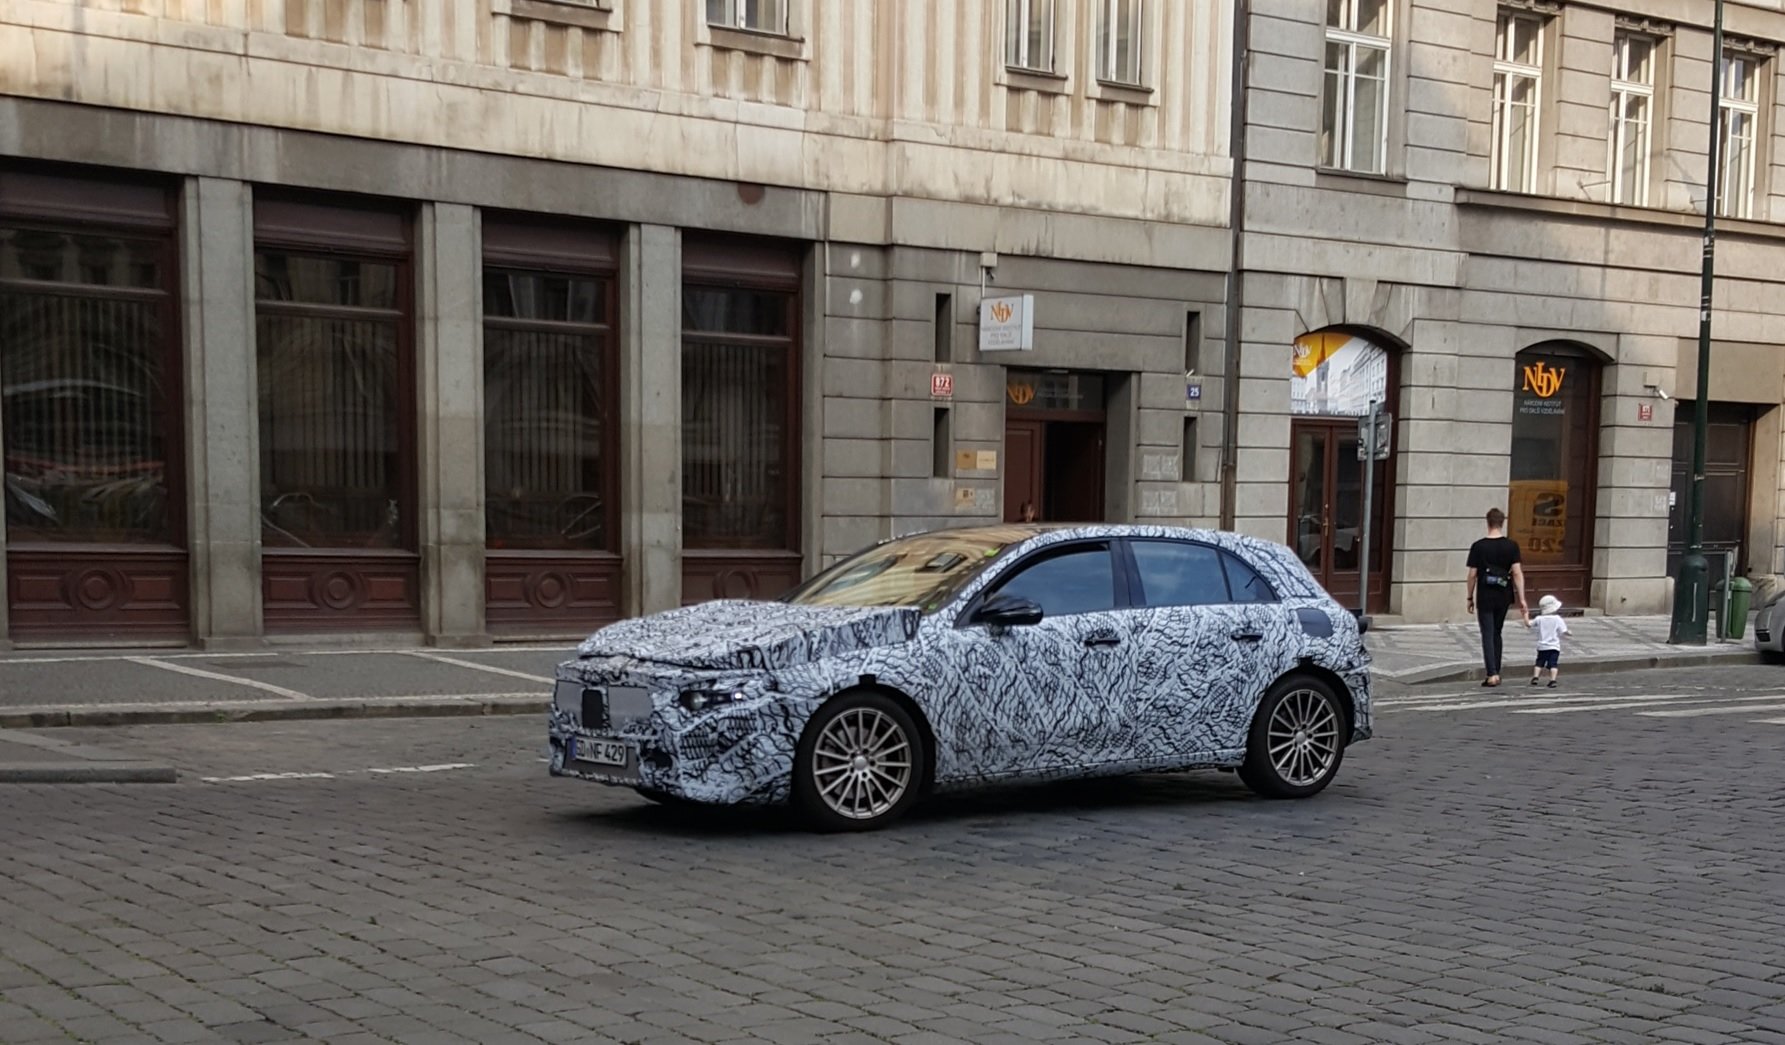 Mercedes-Benz třídy A 2018 vyfocen během jízdy po Praze